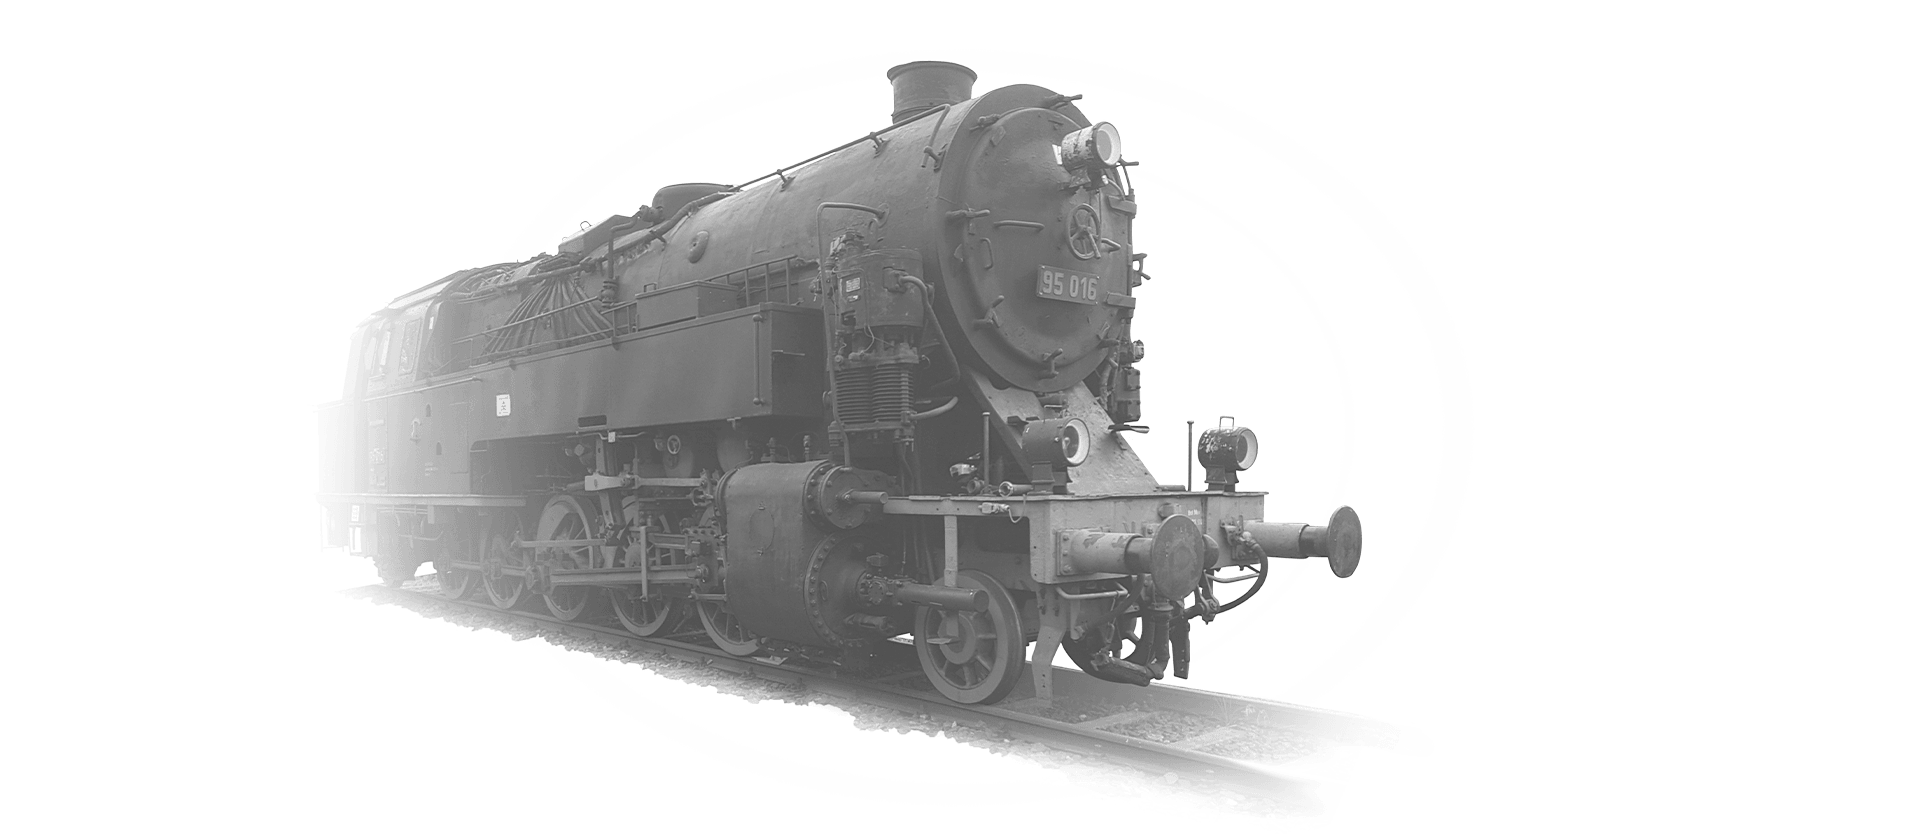 Lok 95-016 in schwarz-weiß fährt auf die Kamera zu